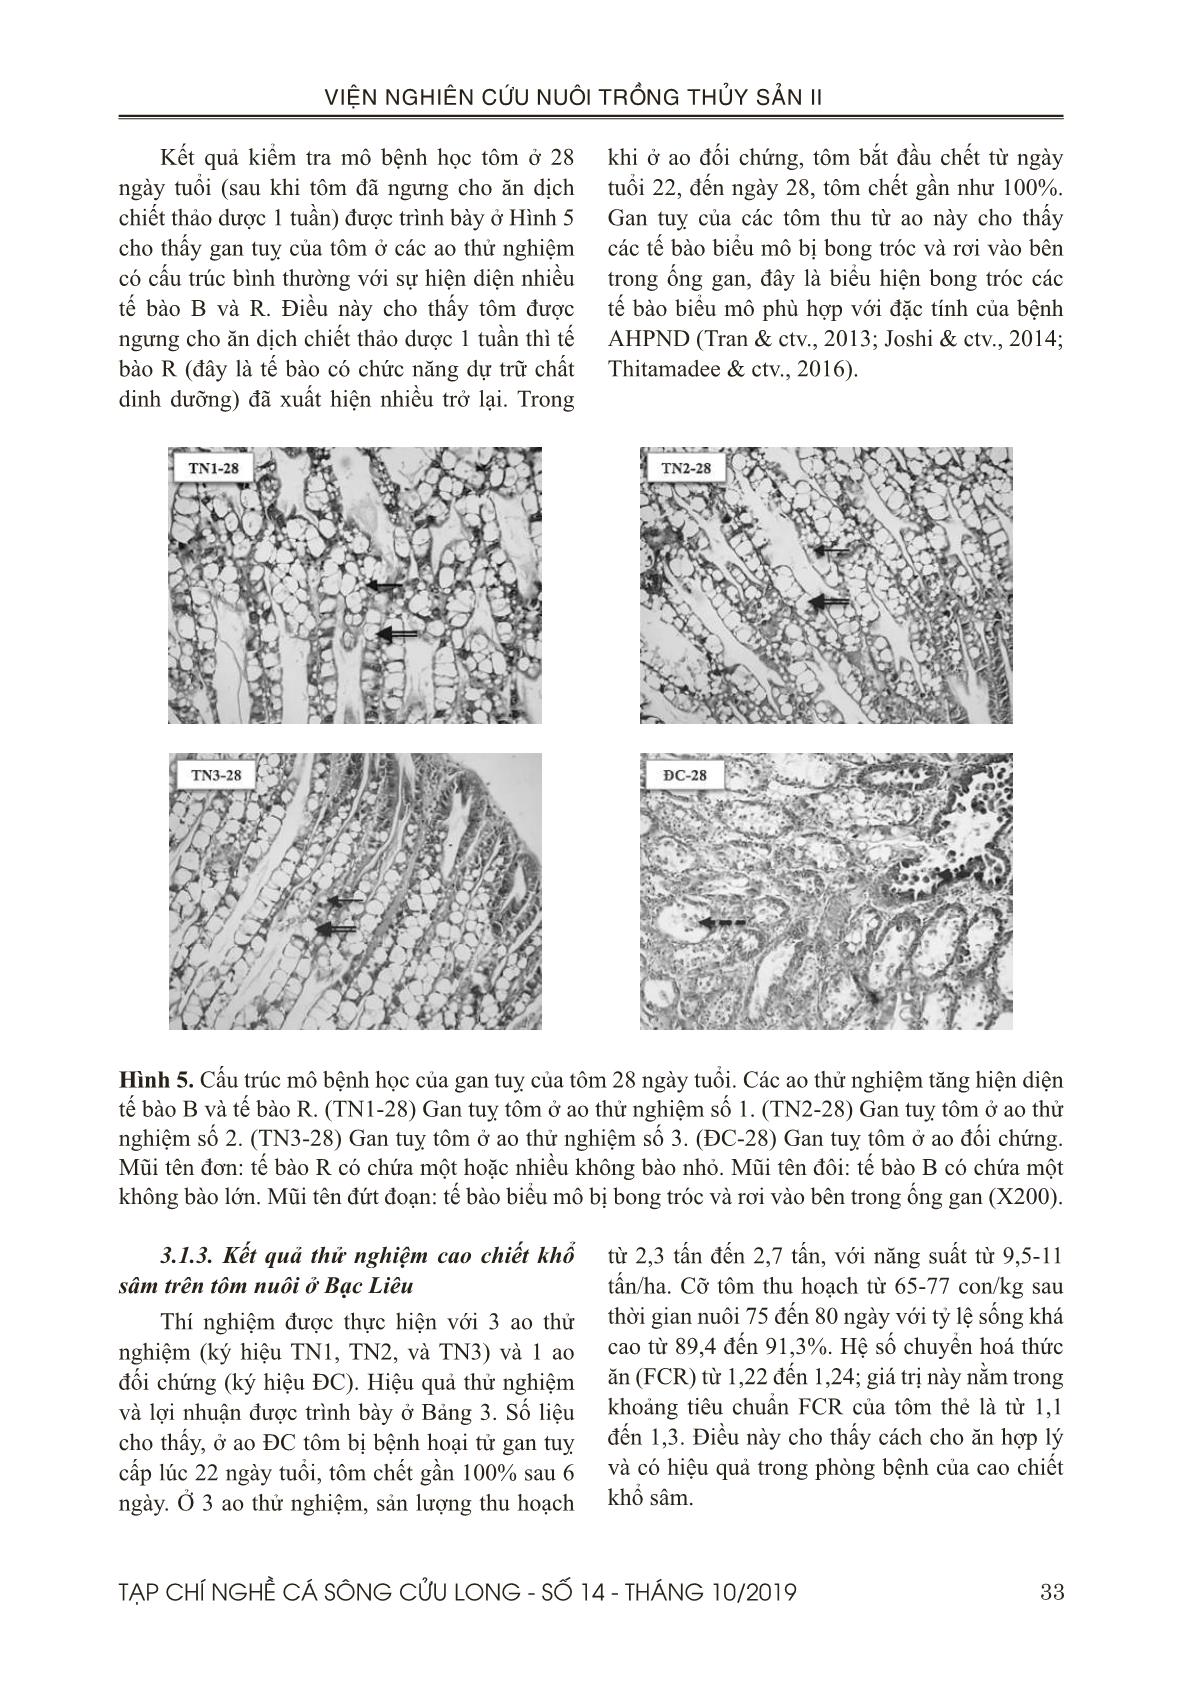 Hiệu quả phòng bệnh hoại tử gan tụy cấp trên tôm thẻ (Penaeus vannamei) của cao chiết khổ sâm (Croton tonkinensis) ở quy mô trang trại trang 8